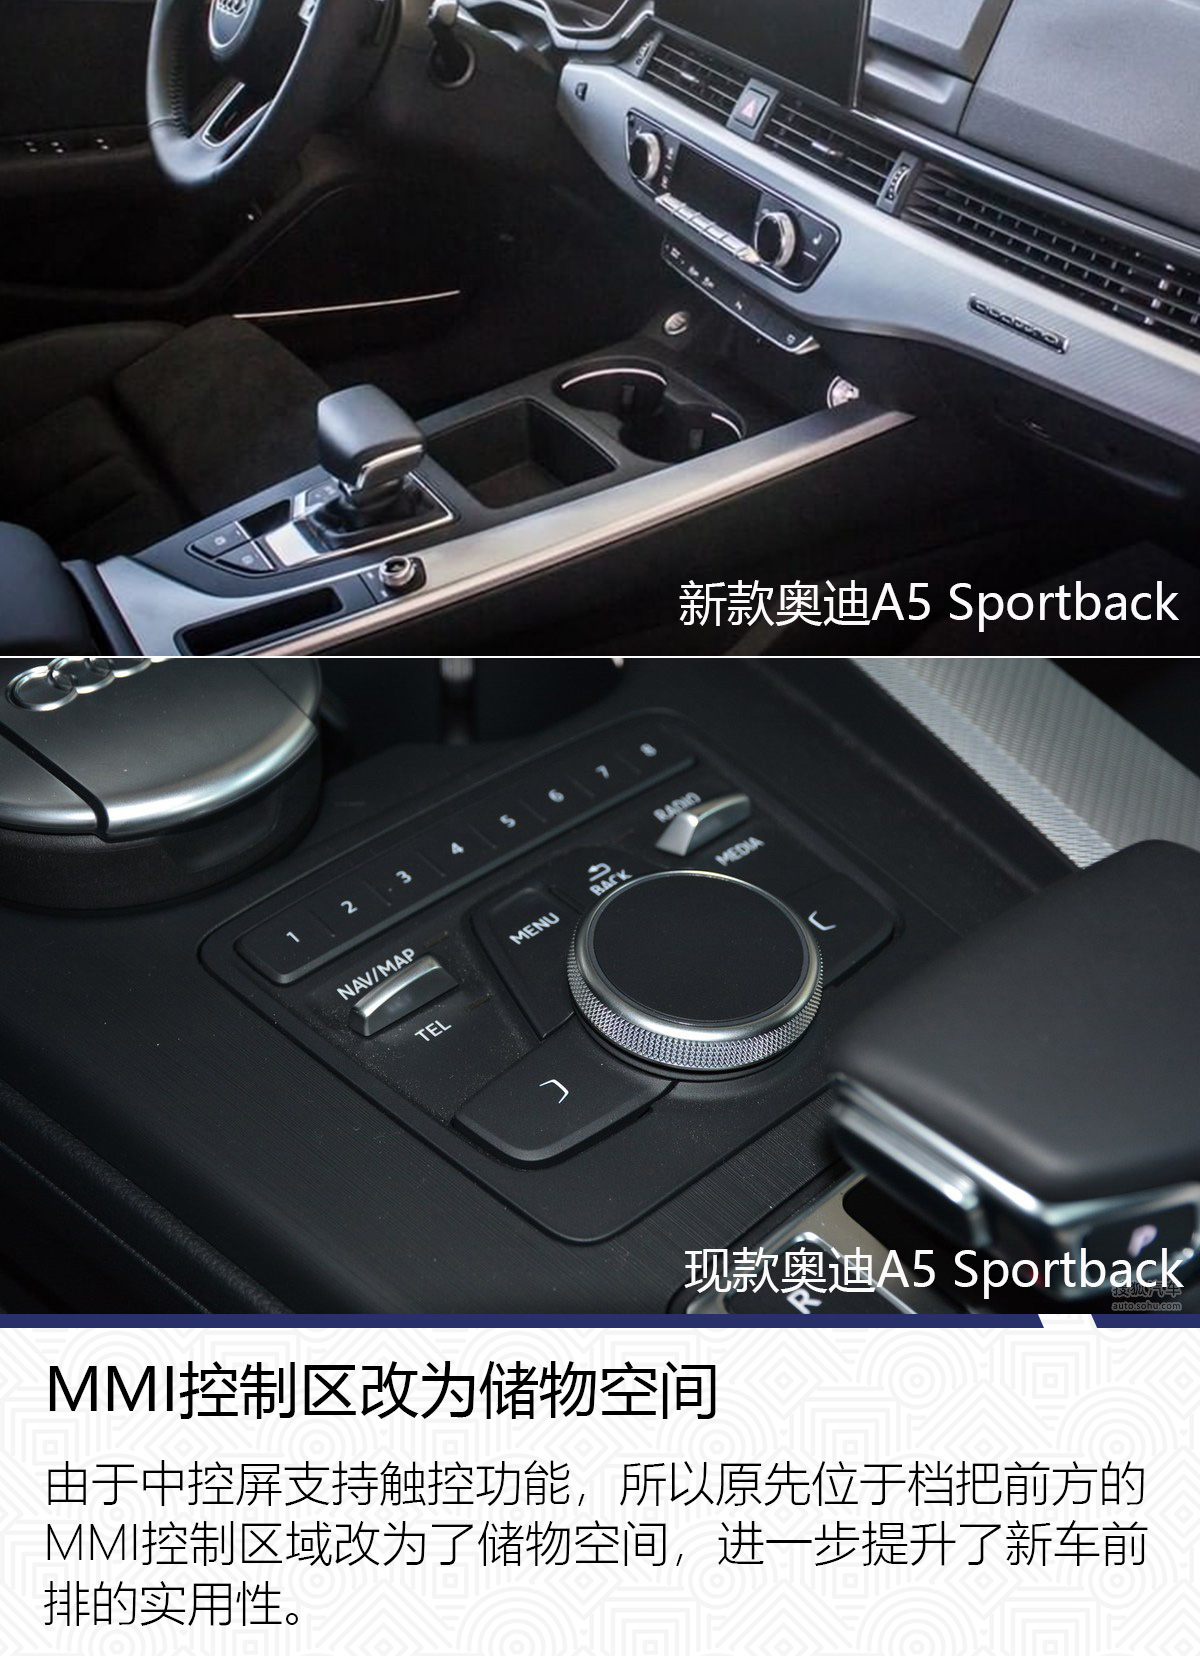 将于北京车展亮相 新款奥迪A5 Sportback细节揭秘